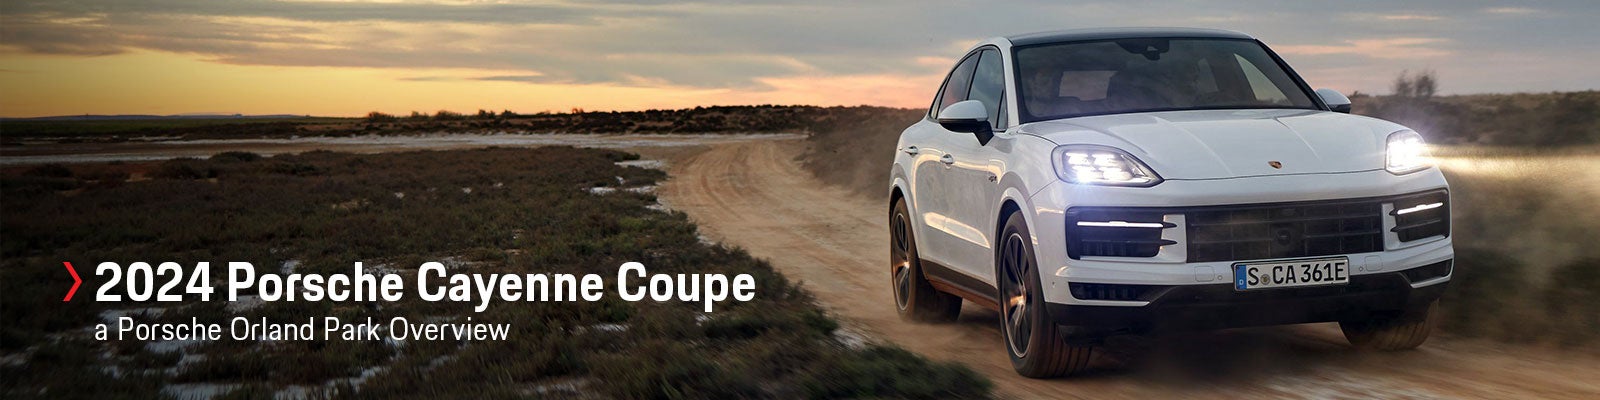 2020 Porsche Cayenne Coupe review: 2020 Porsche Cayenne Coupe